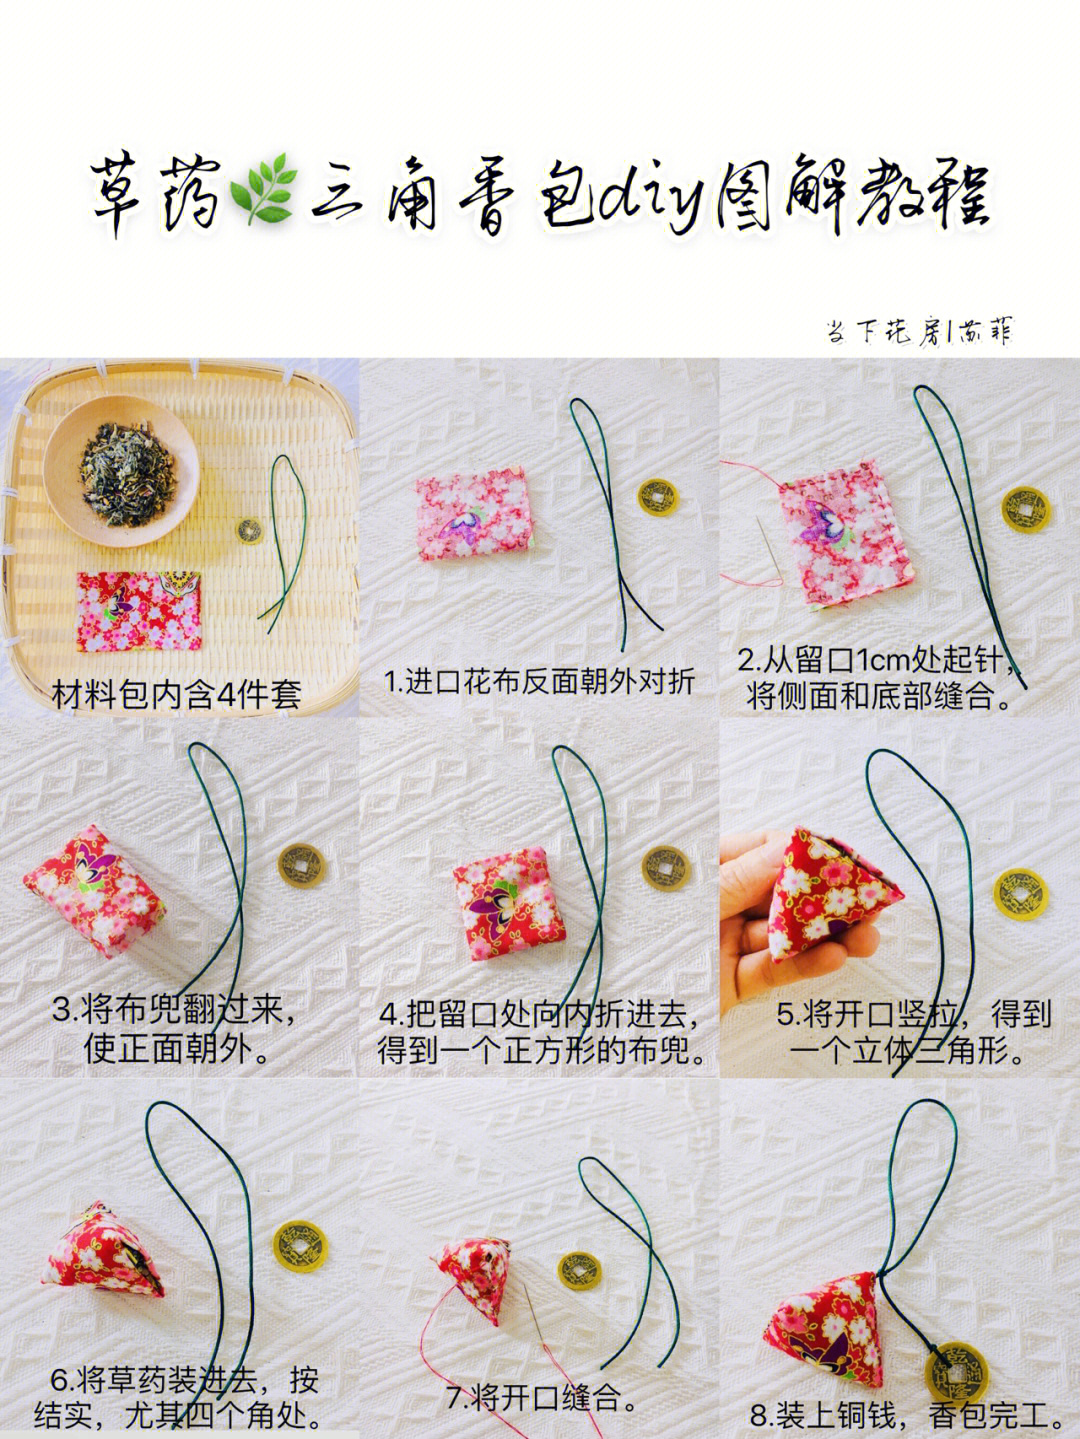 缝沙包的制作过程图片